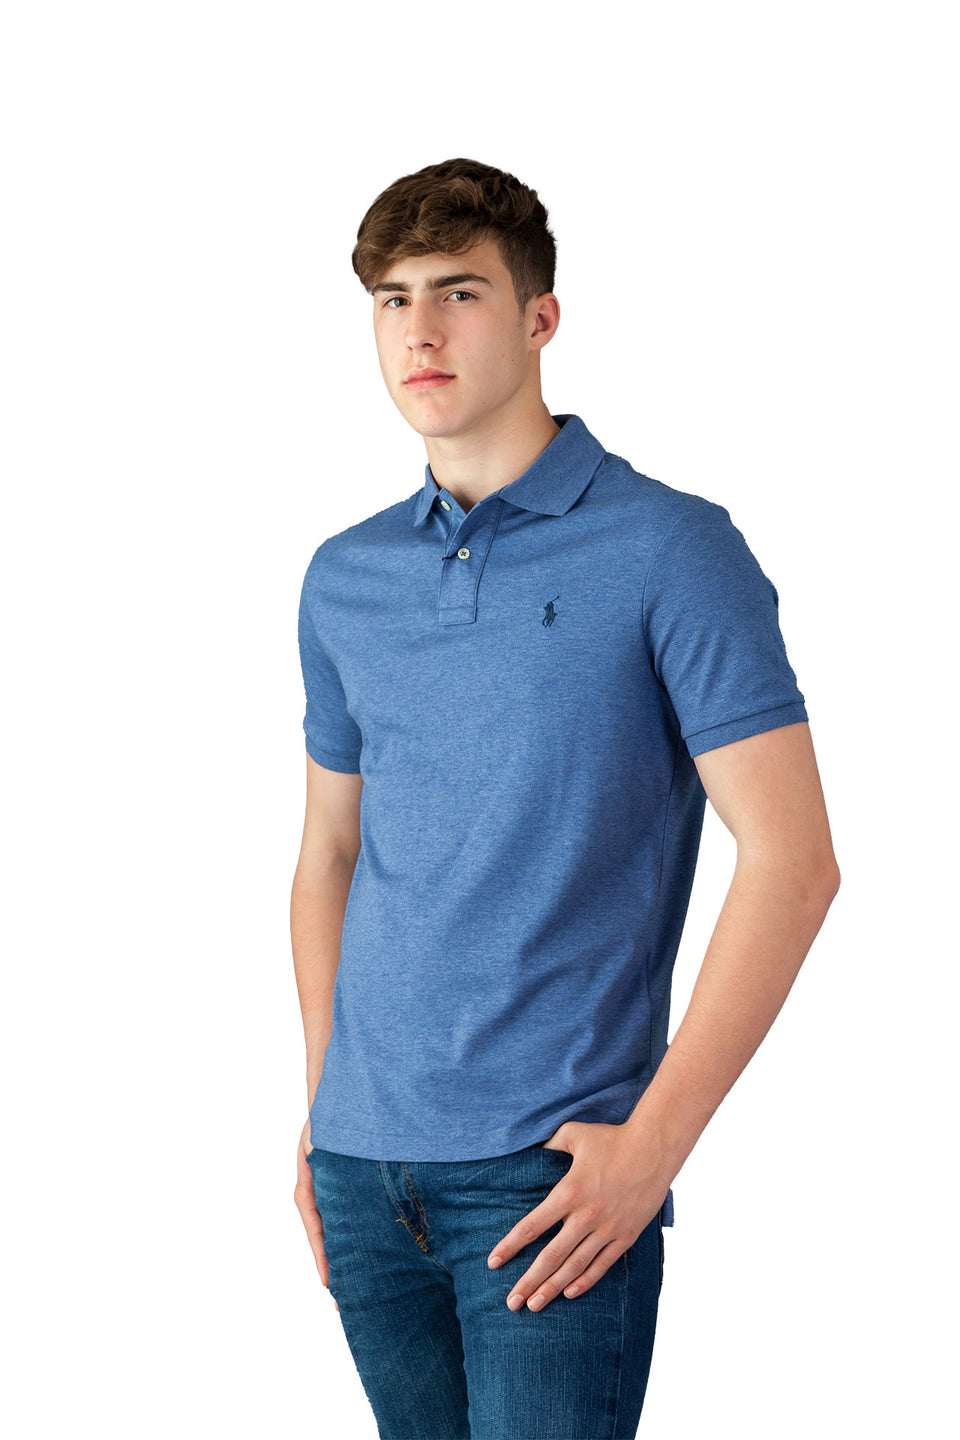 Ralph Lauren Light Blue Polo Shirt - Camden Connaught